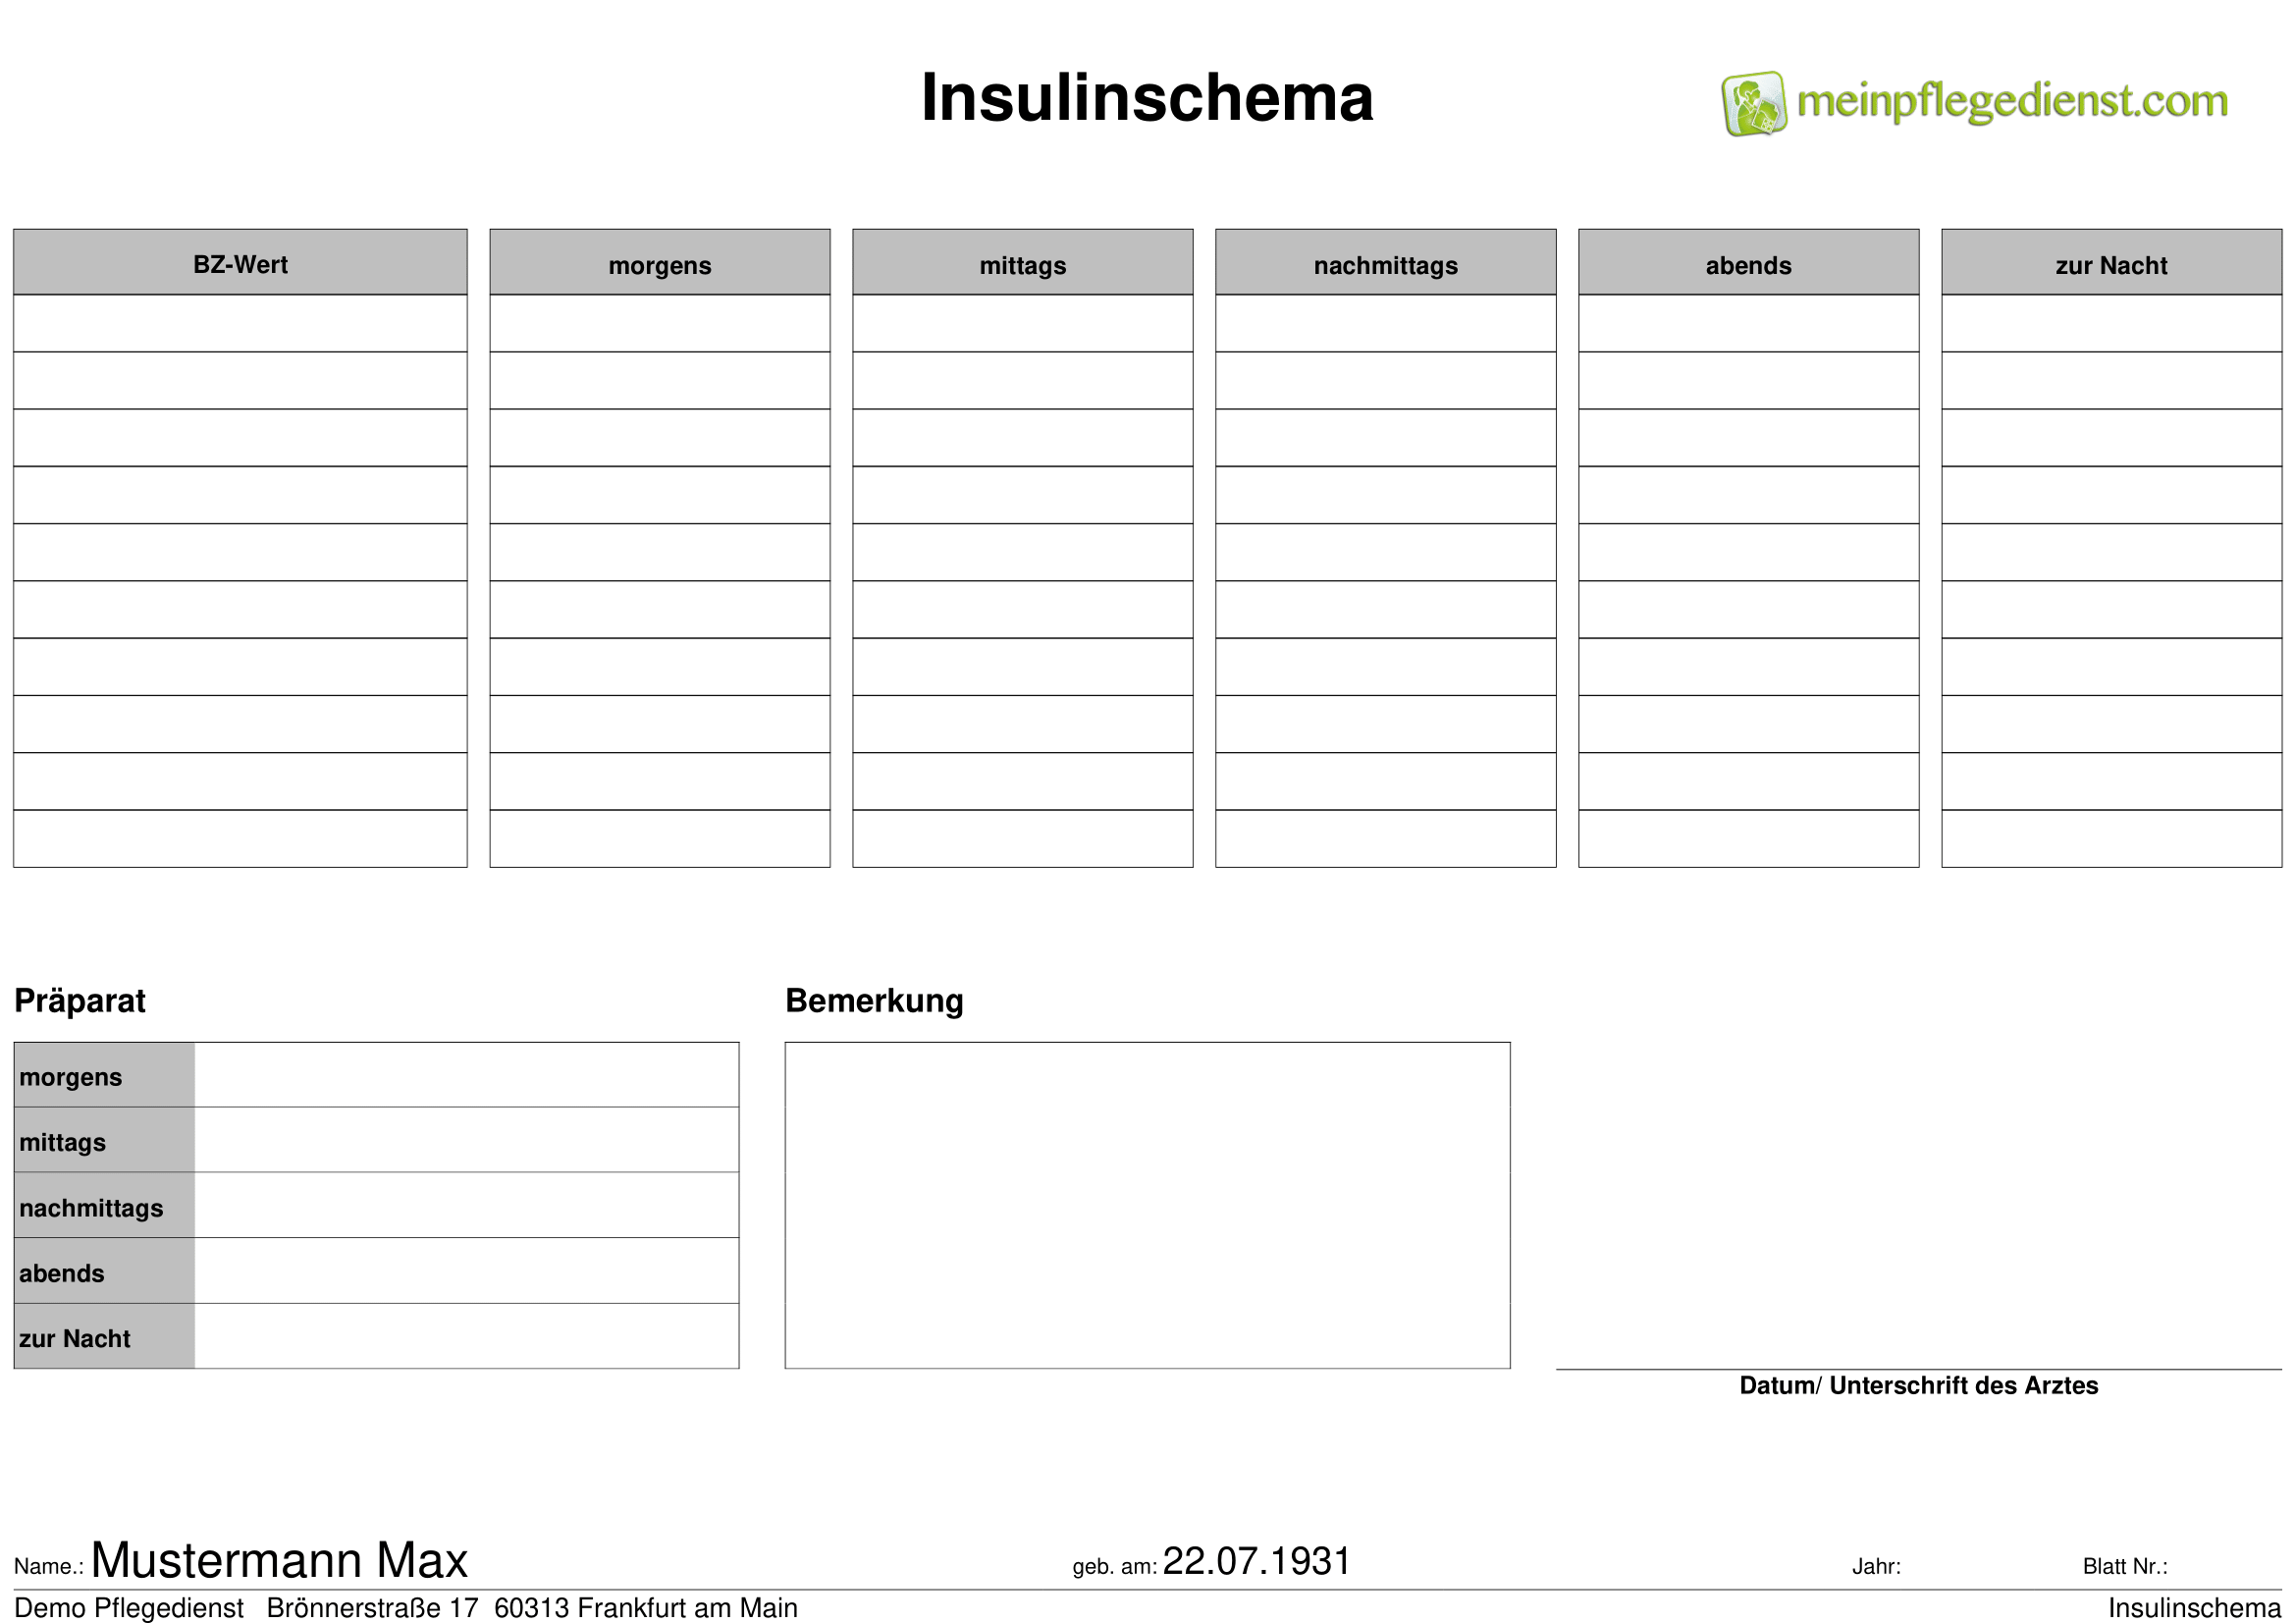 Insulinschema